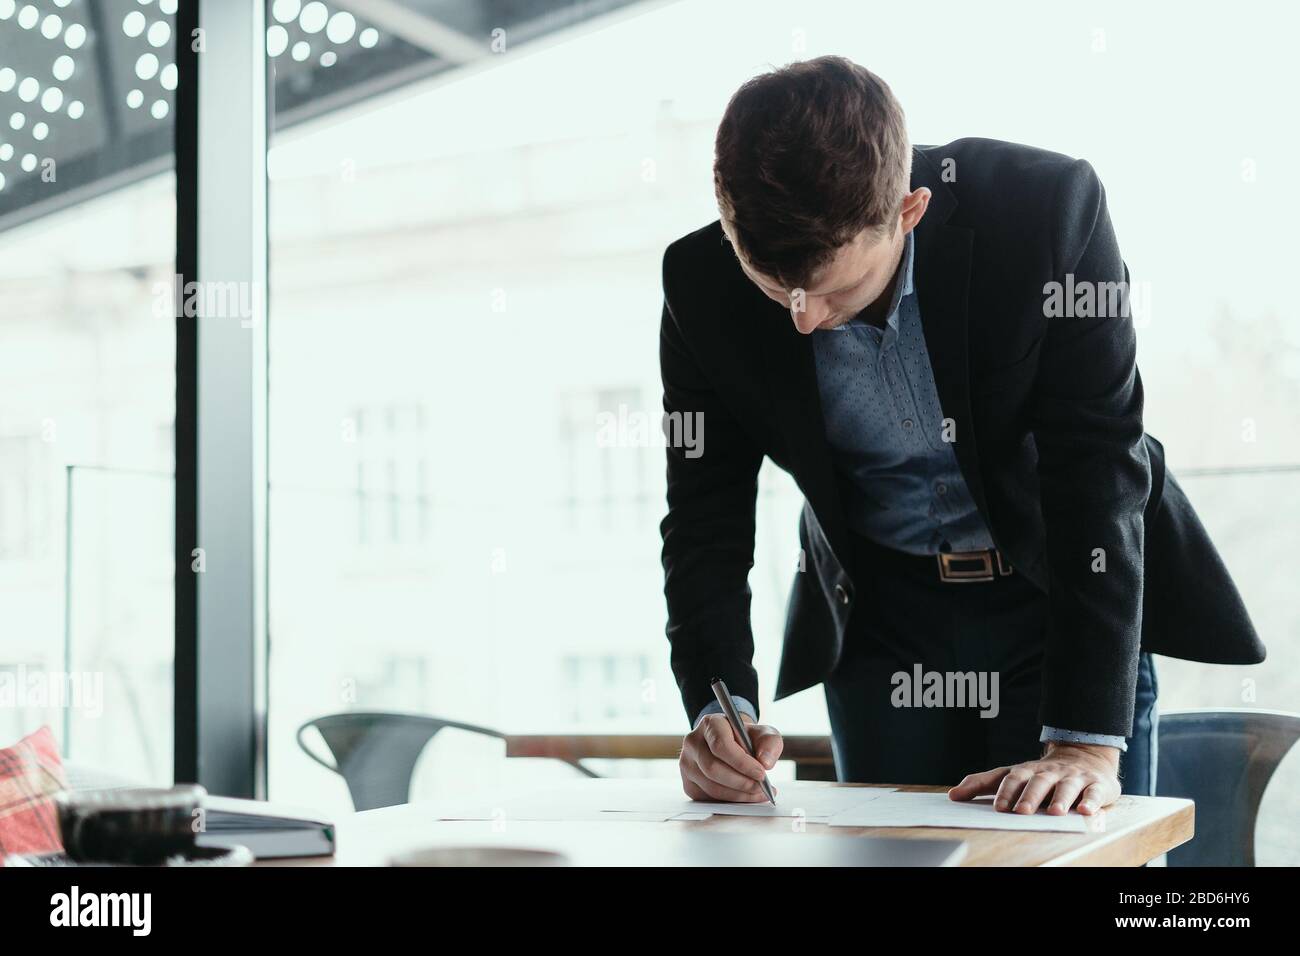 Selbstbewusster junger Business man unterschreibt Dokumente in einem modernen Büro mit Fenster im Hintergrund. Stift in der Hand, Papier auf dem Holztisch Stockfoto